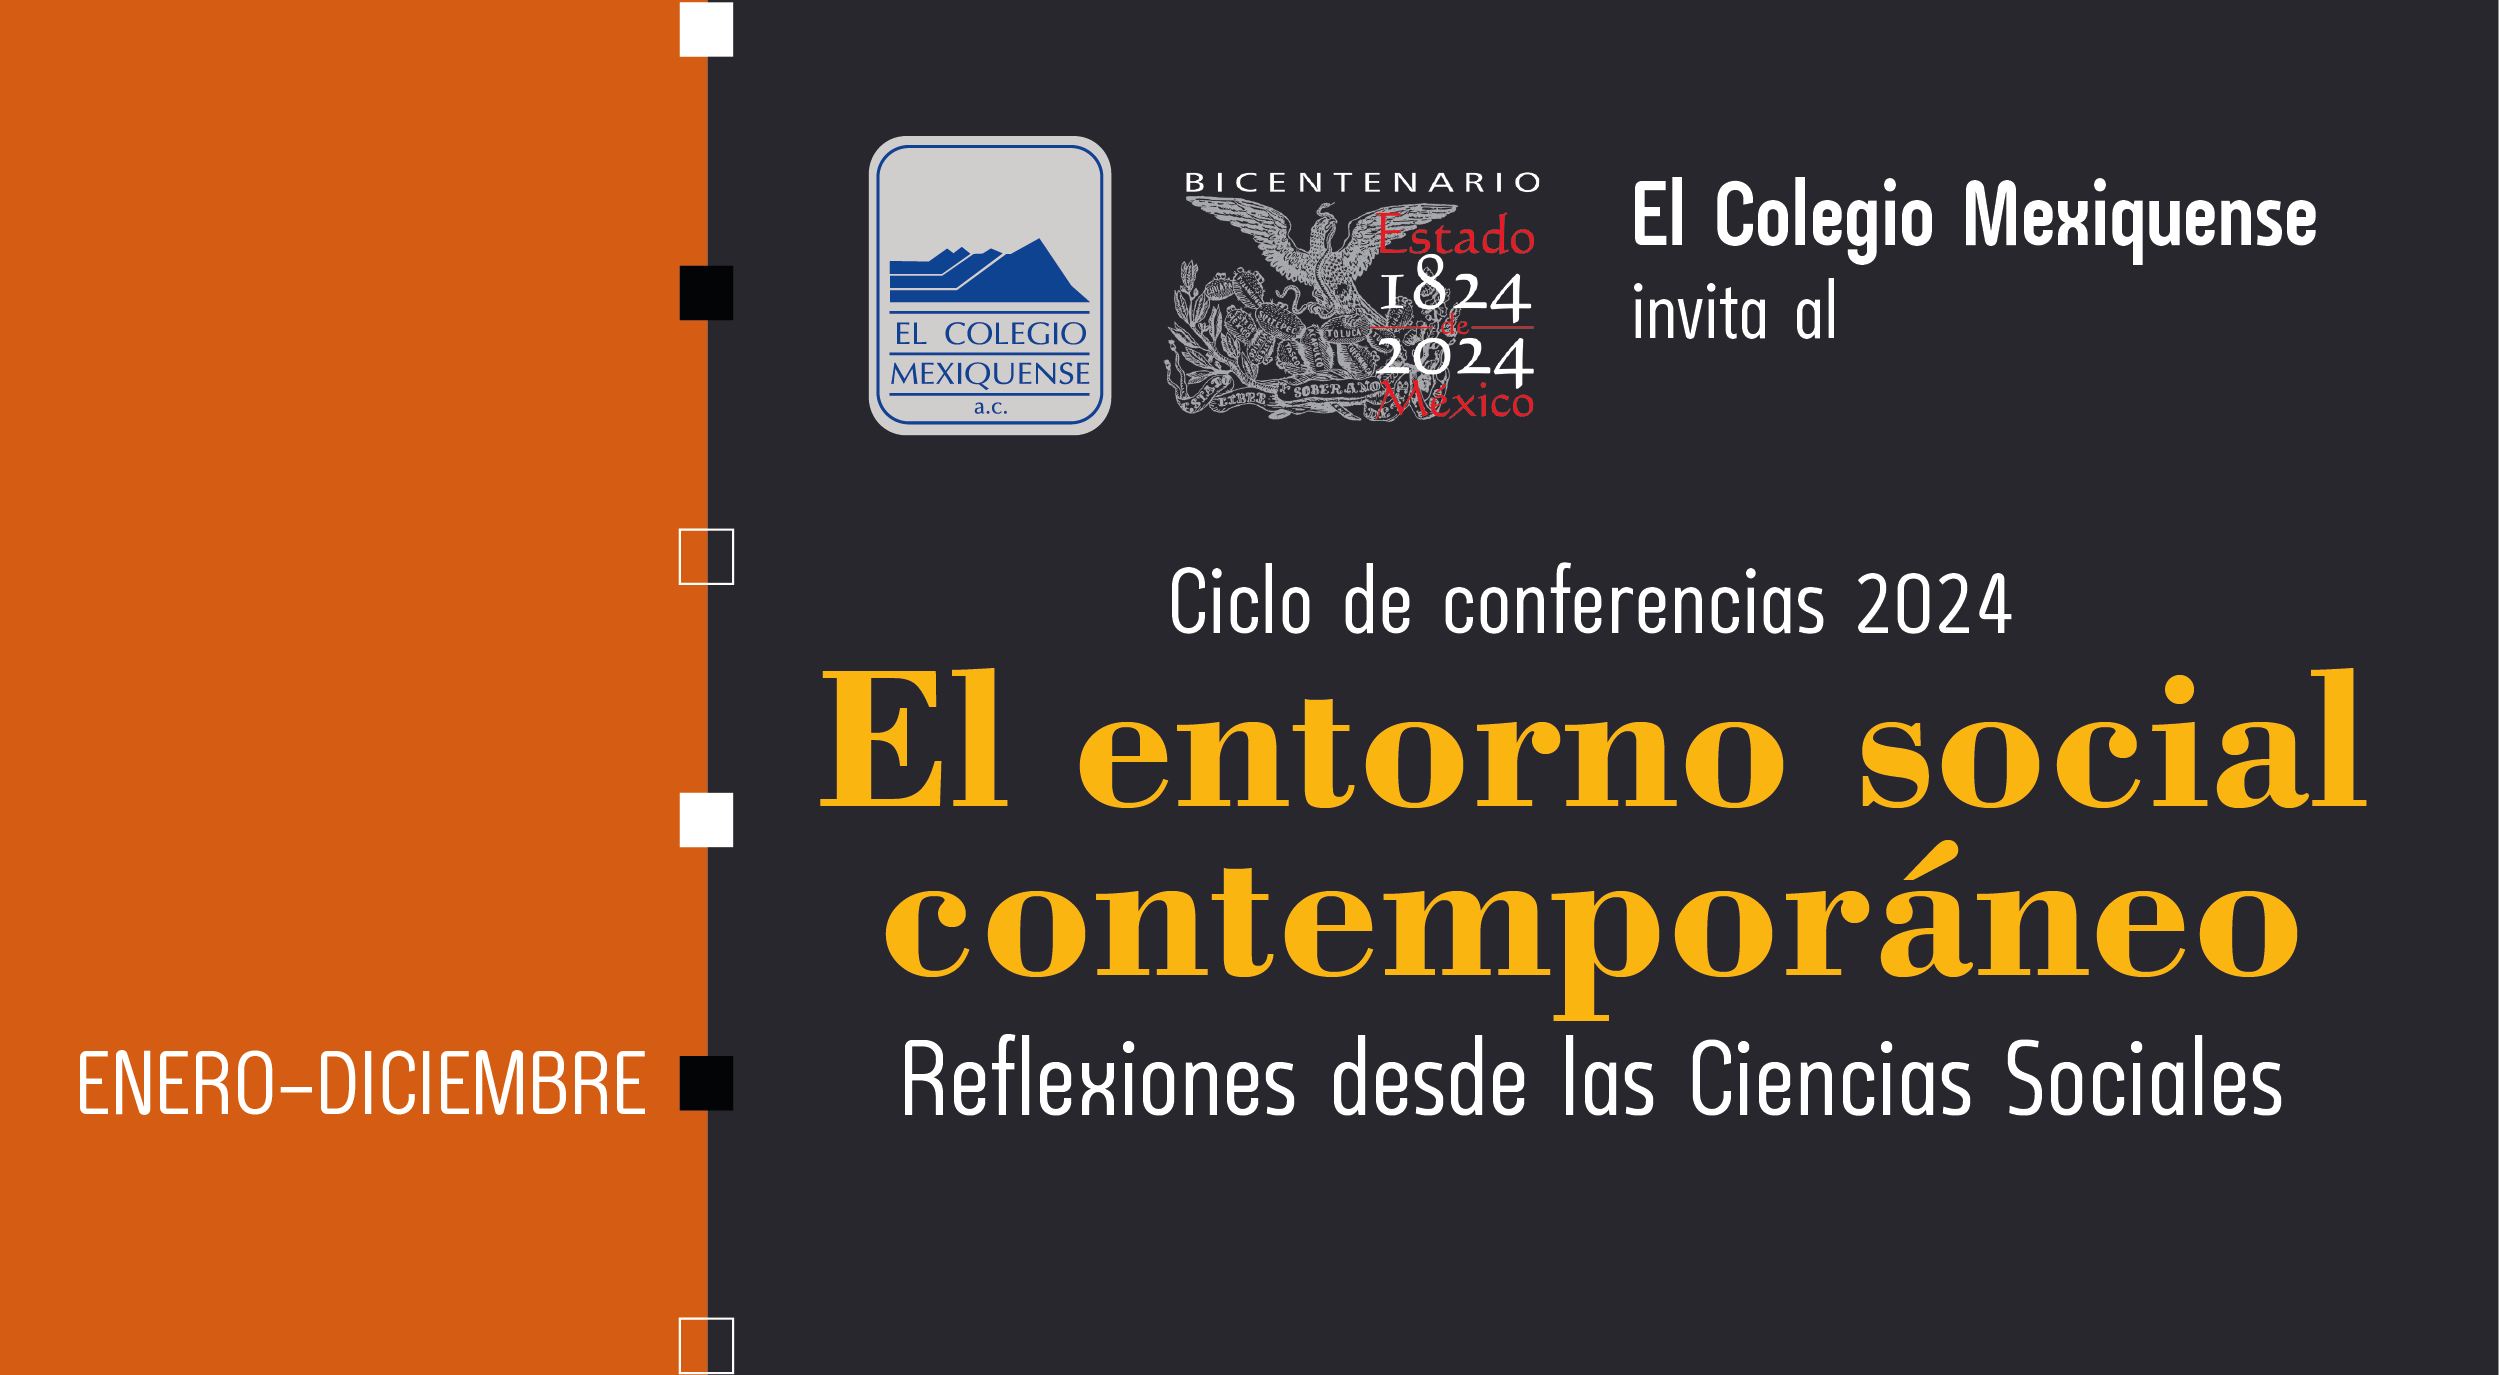 Ciclo de conferencias 2024. El entorno social contemporáneo. Reflexiones desde las Ciencias Sociales